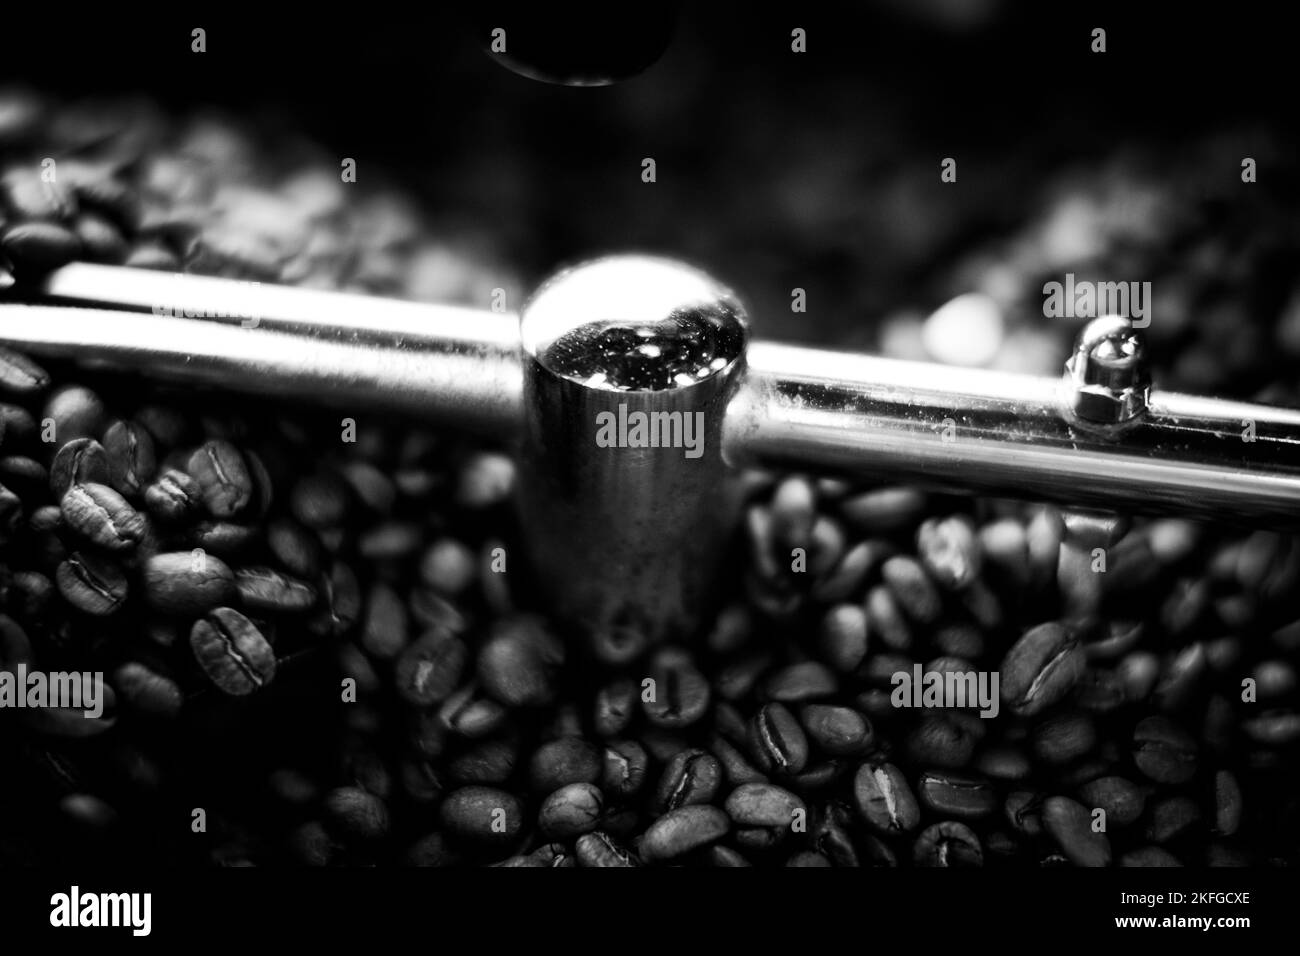 Grains de café dans une machine à café, dans des couleurs sombres. Banque D'Images